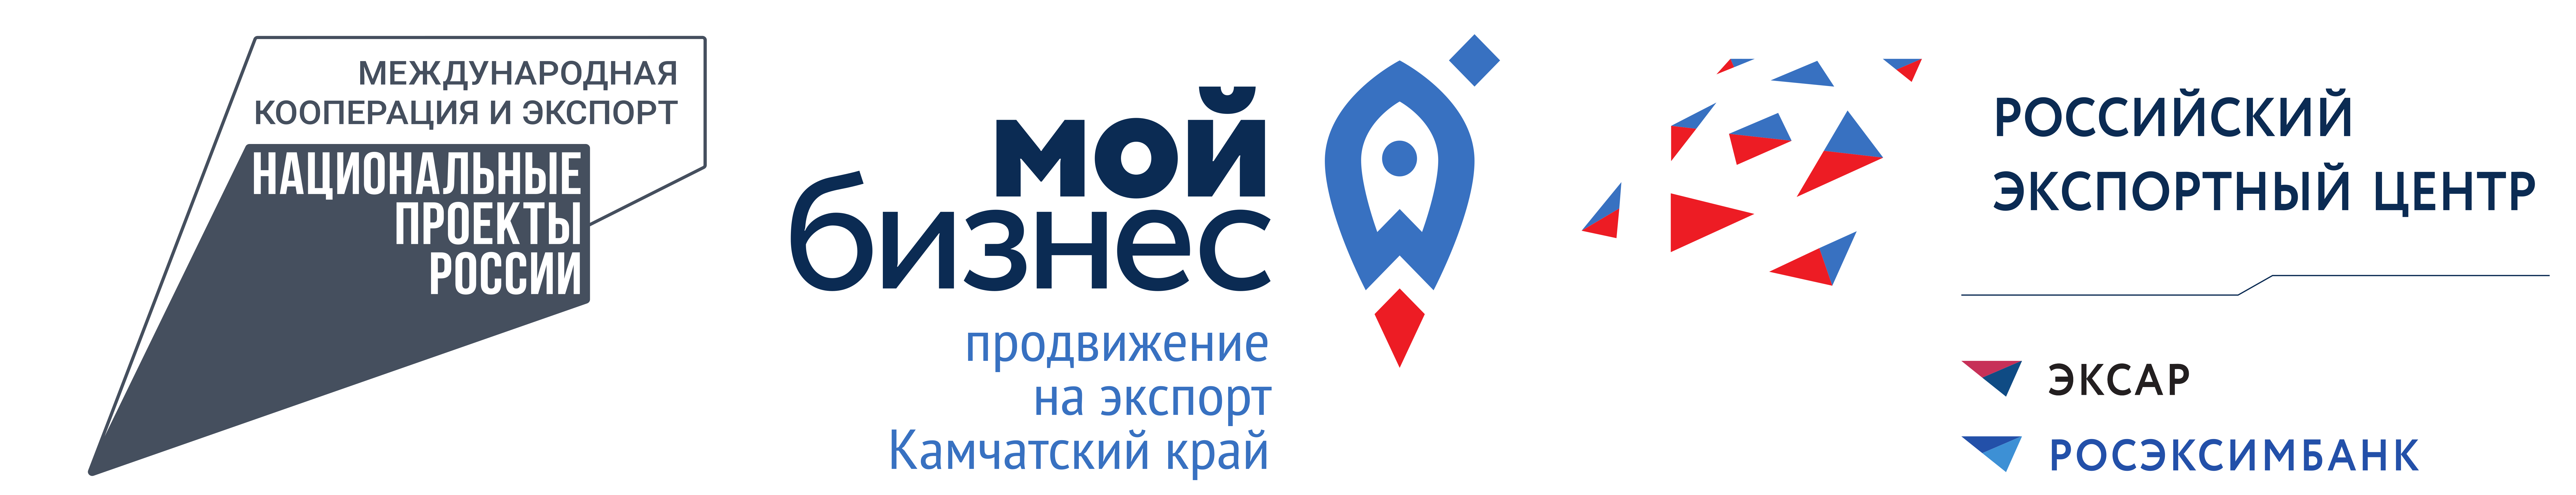 Центр поддержки экспорта Камчатского края